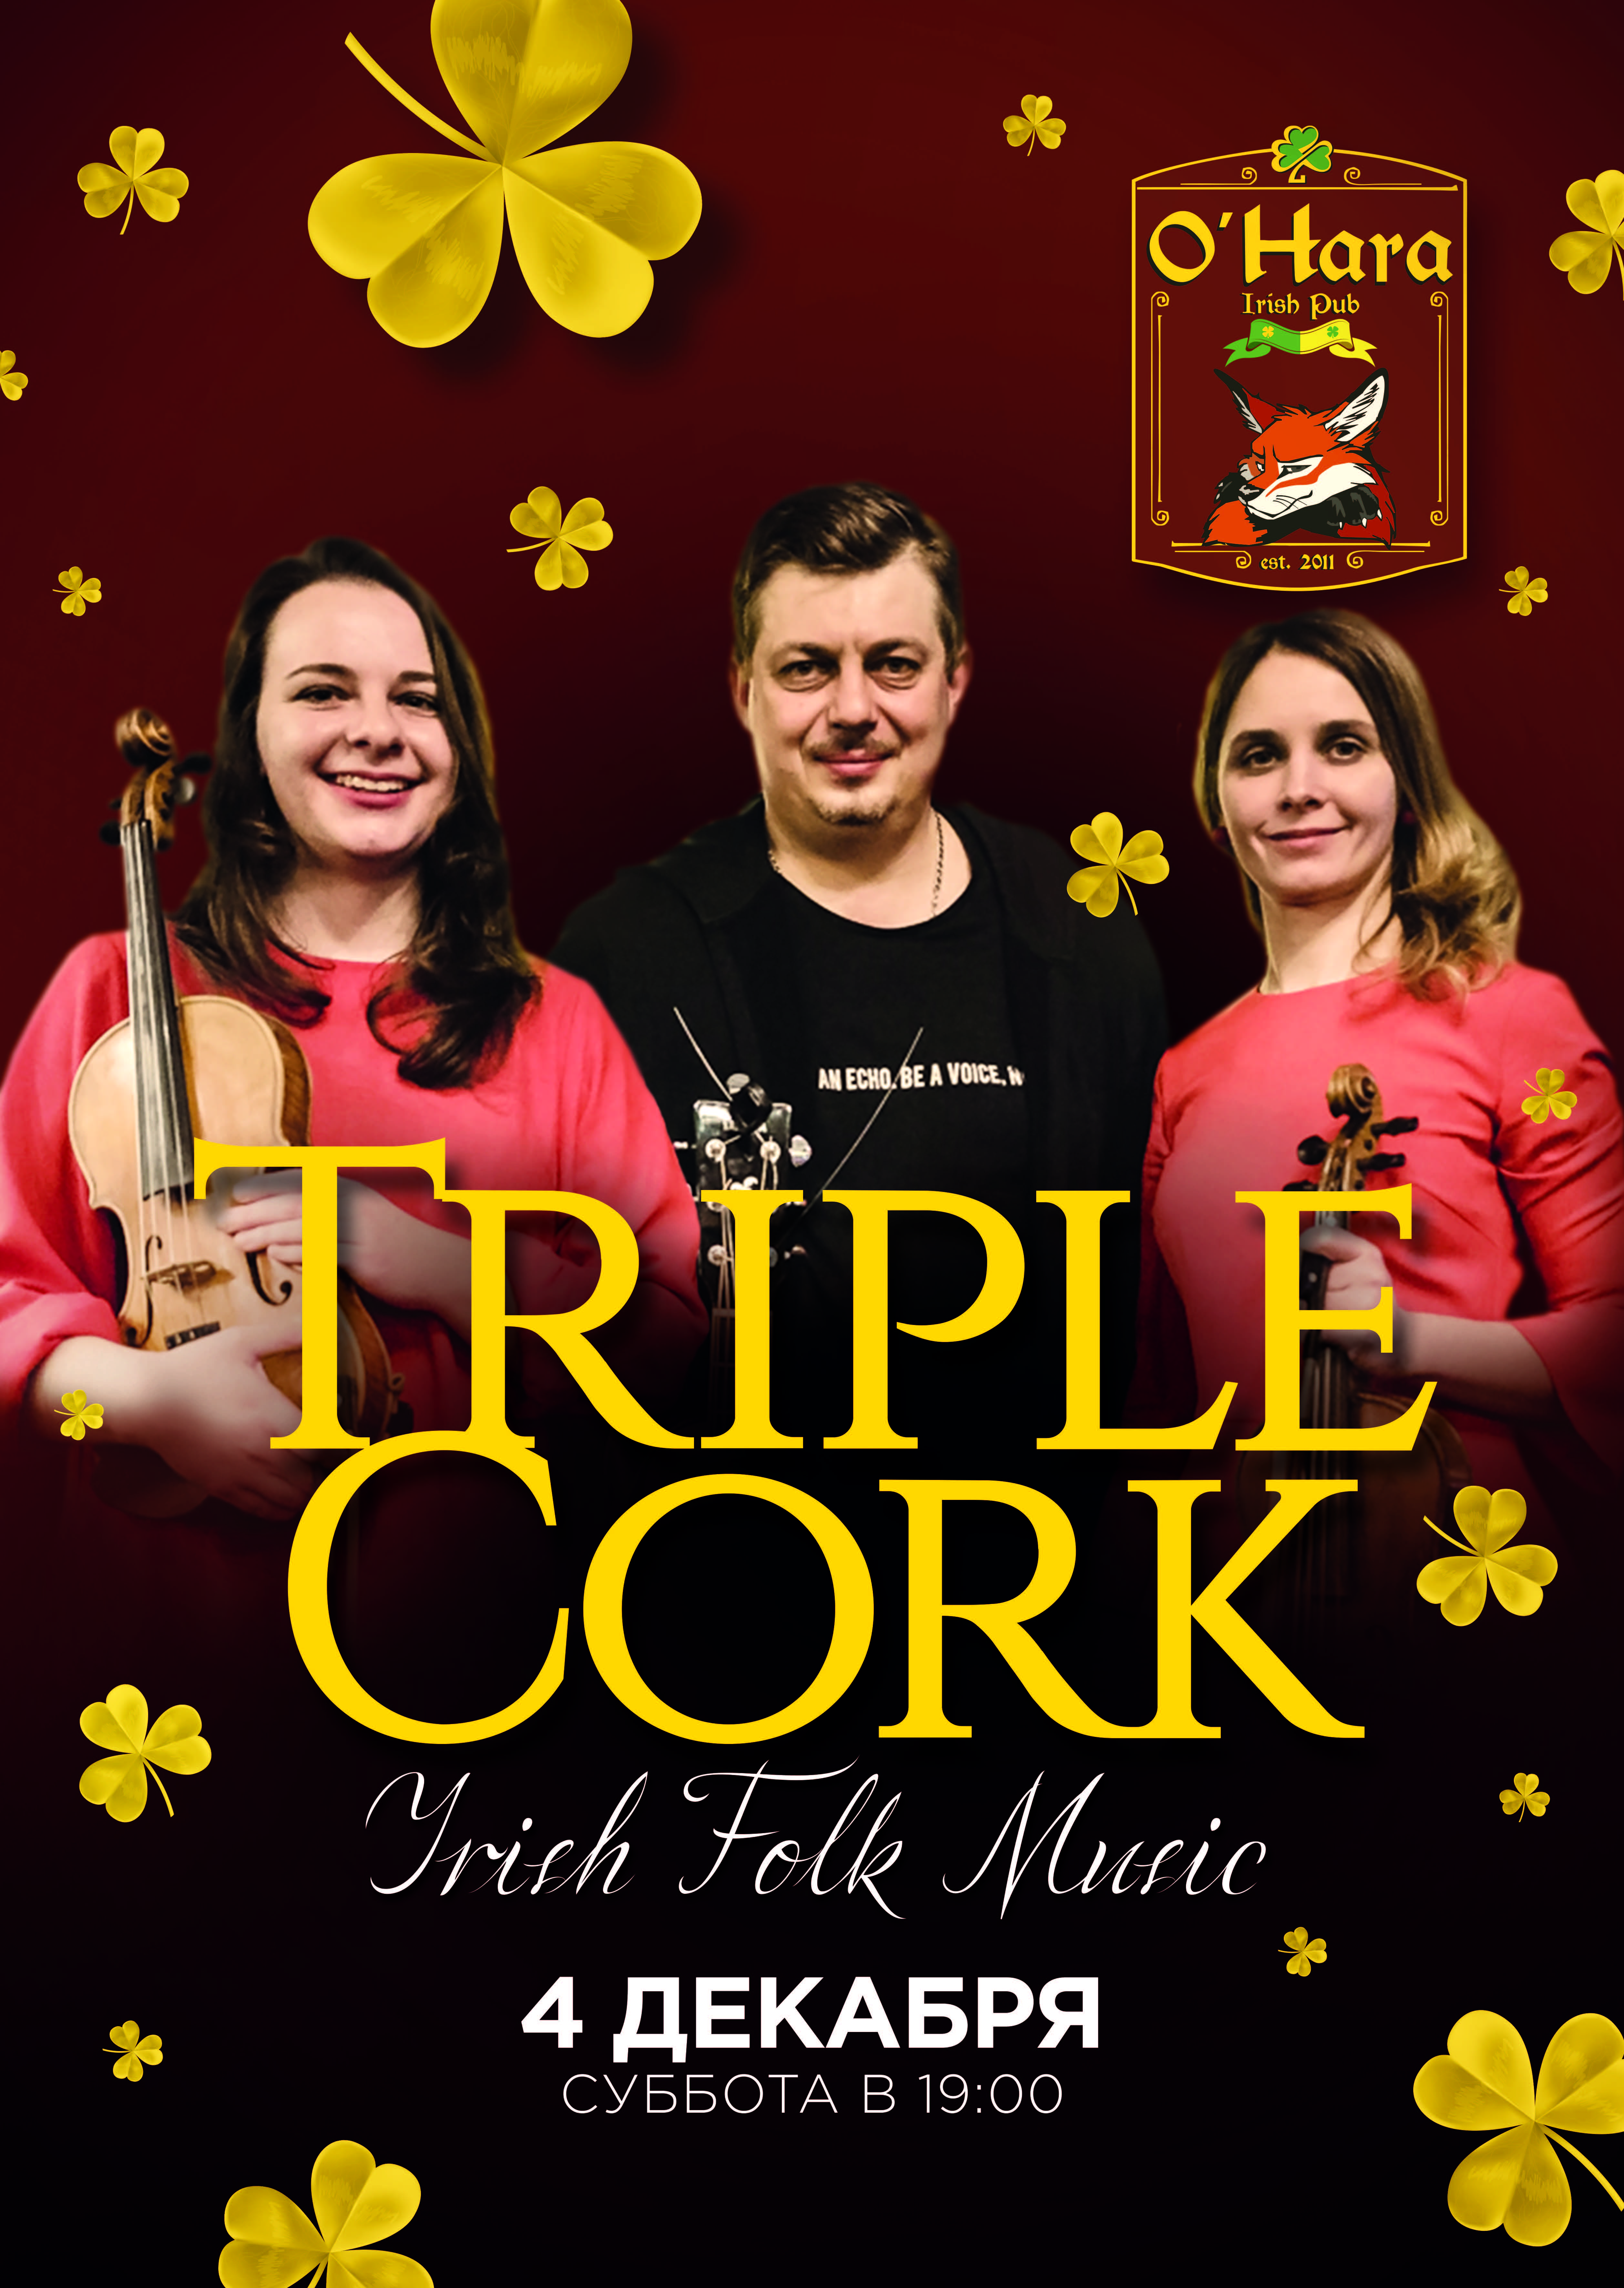 4 декабря выступление Triple Cork